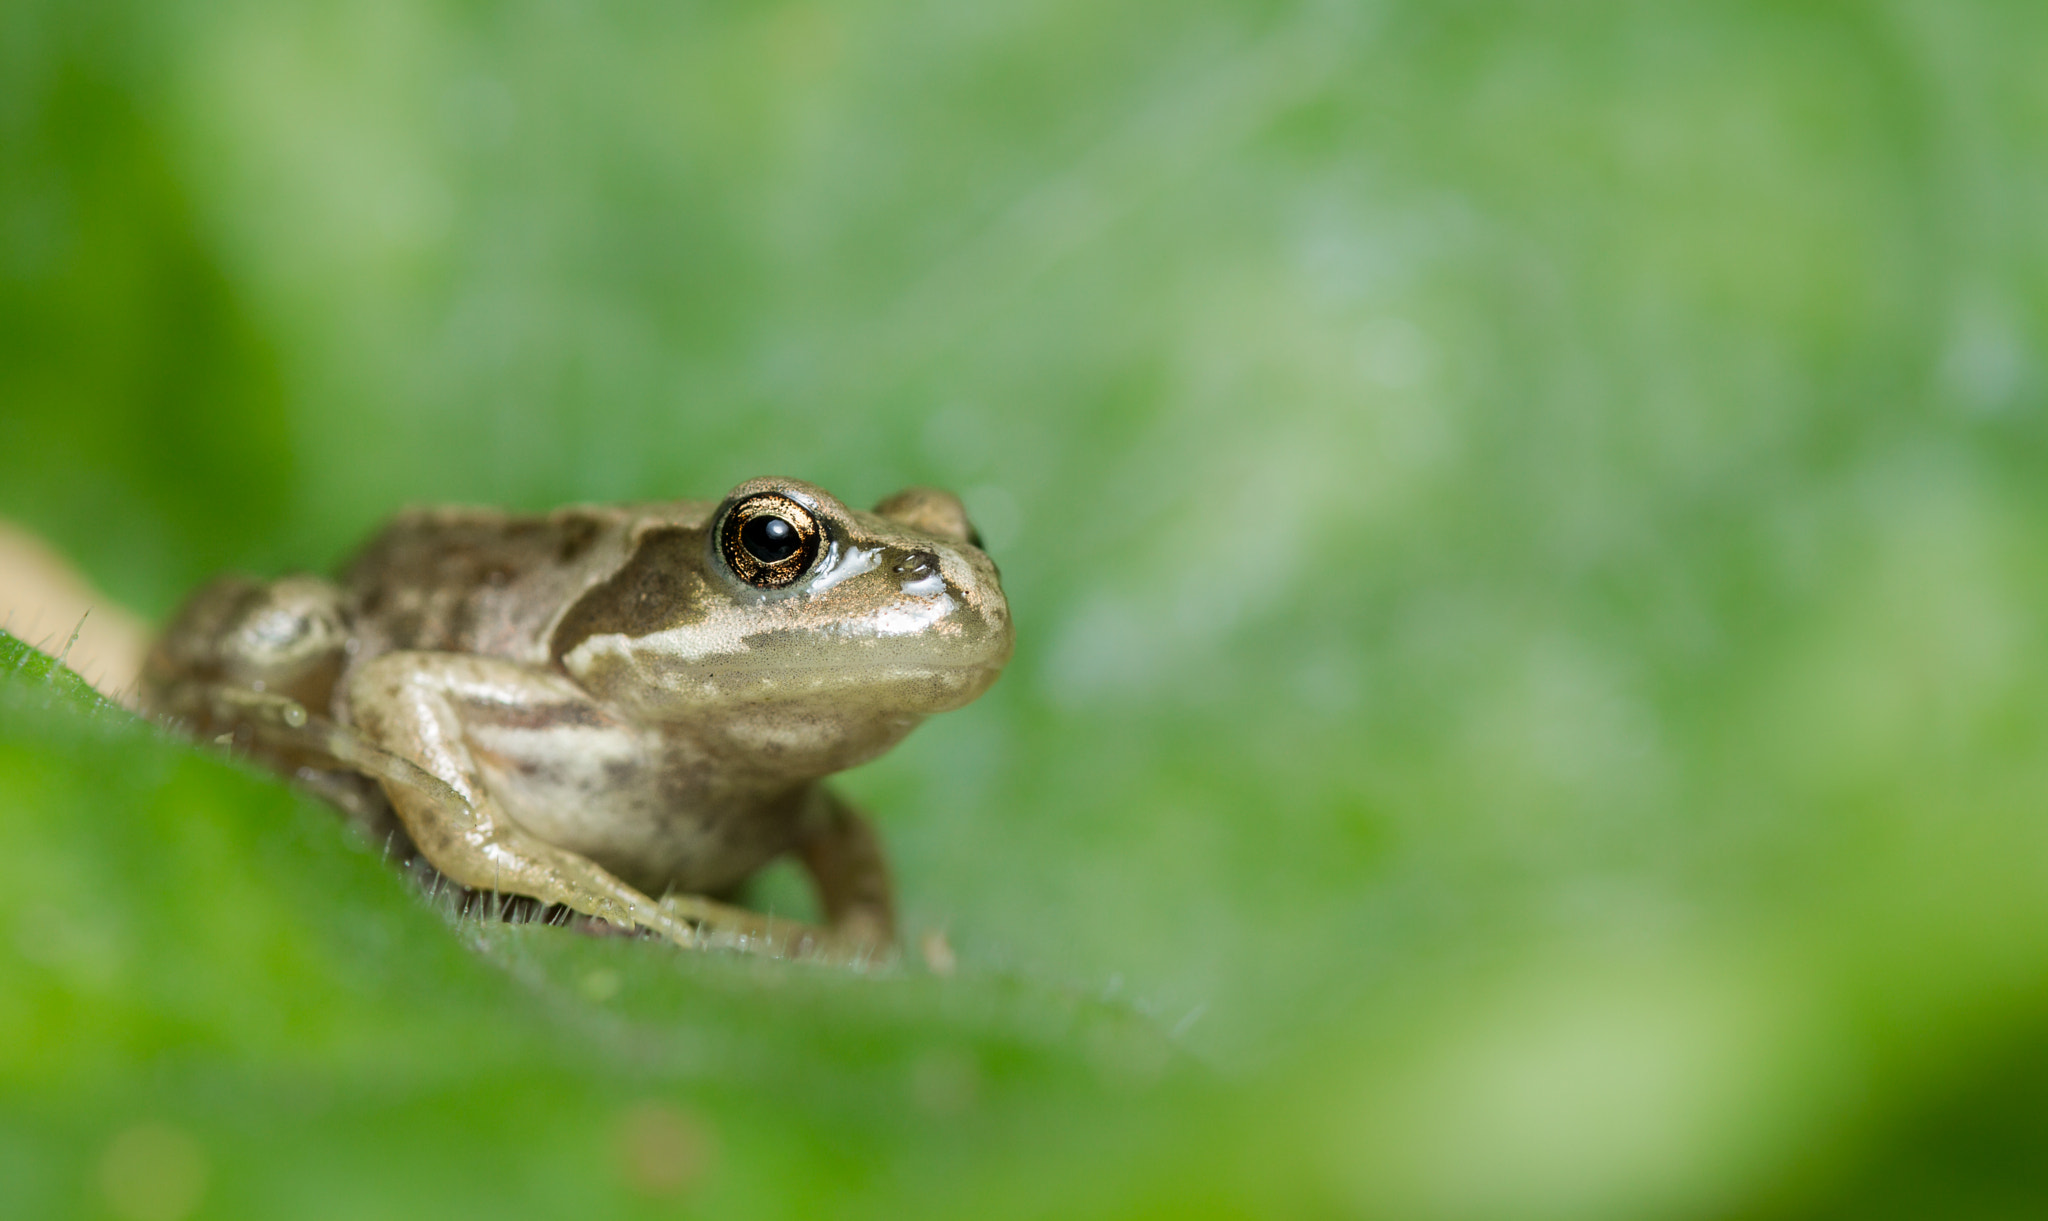 Canon EOS 7D sample photo. Common frog (rana temporaria) photography